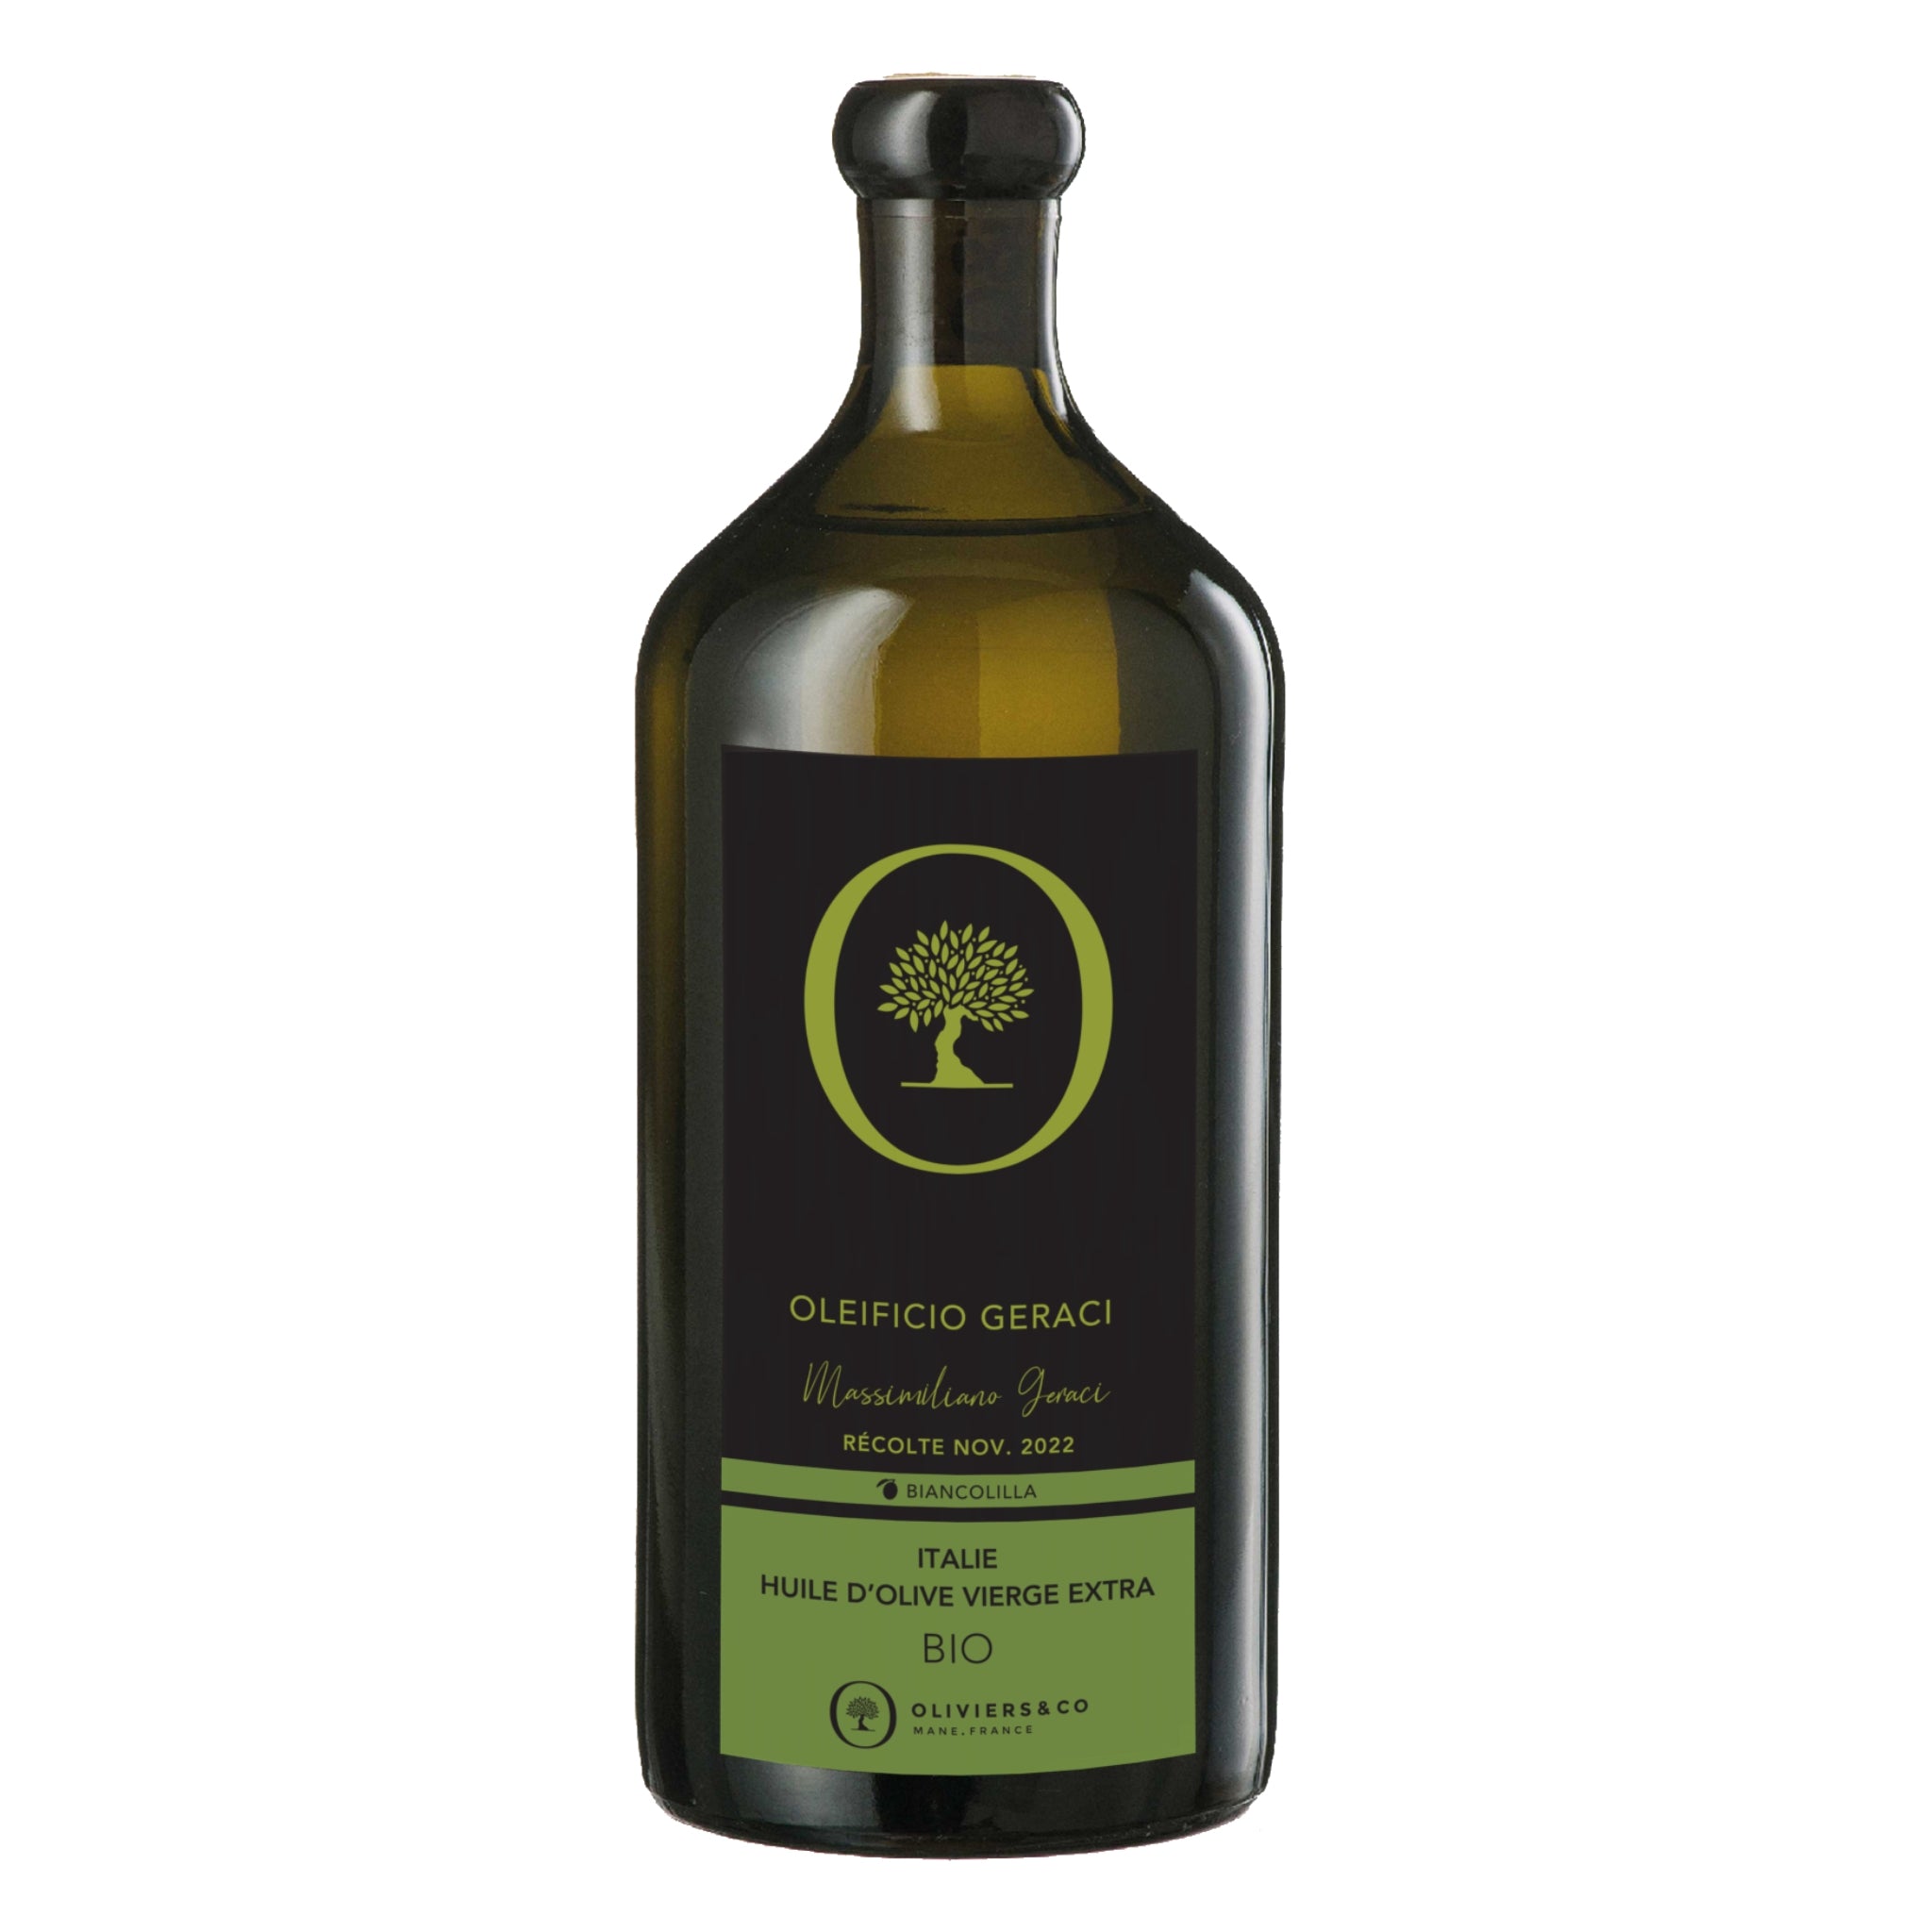 Økologisk italiensk ekstra jomfru olivenolie Oleificio Geraci, 500ml fra Oliviers & Co